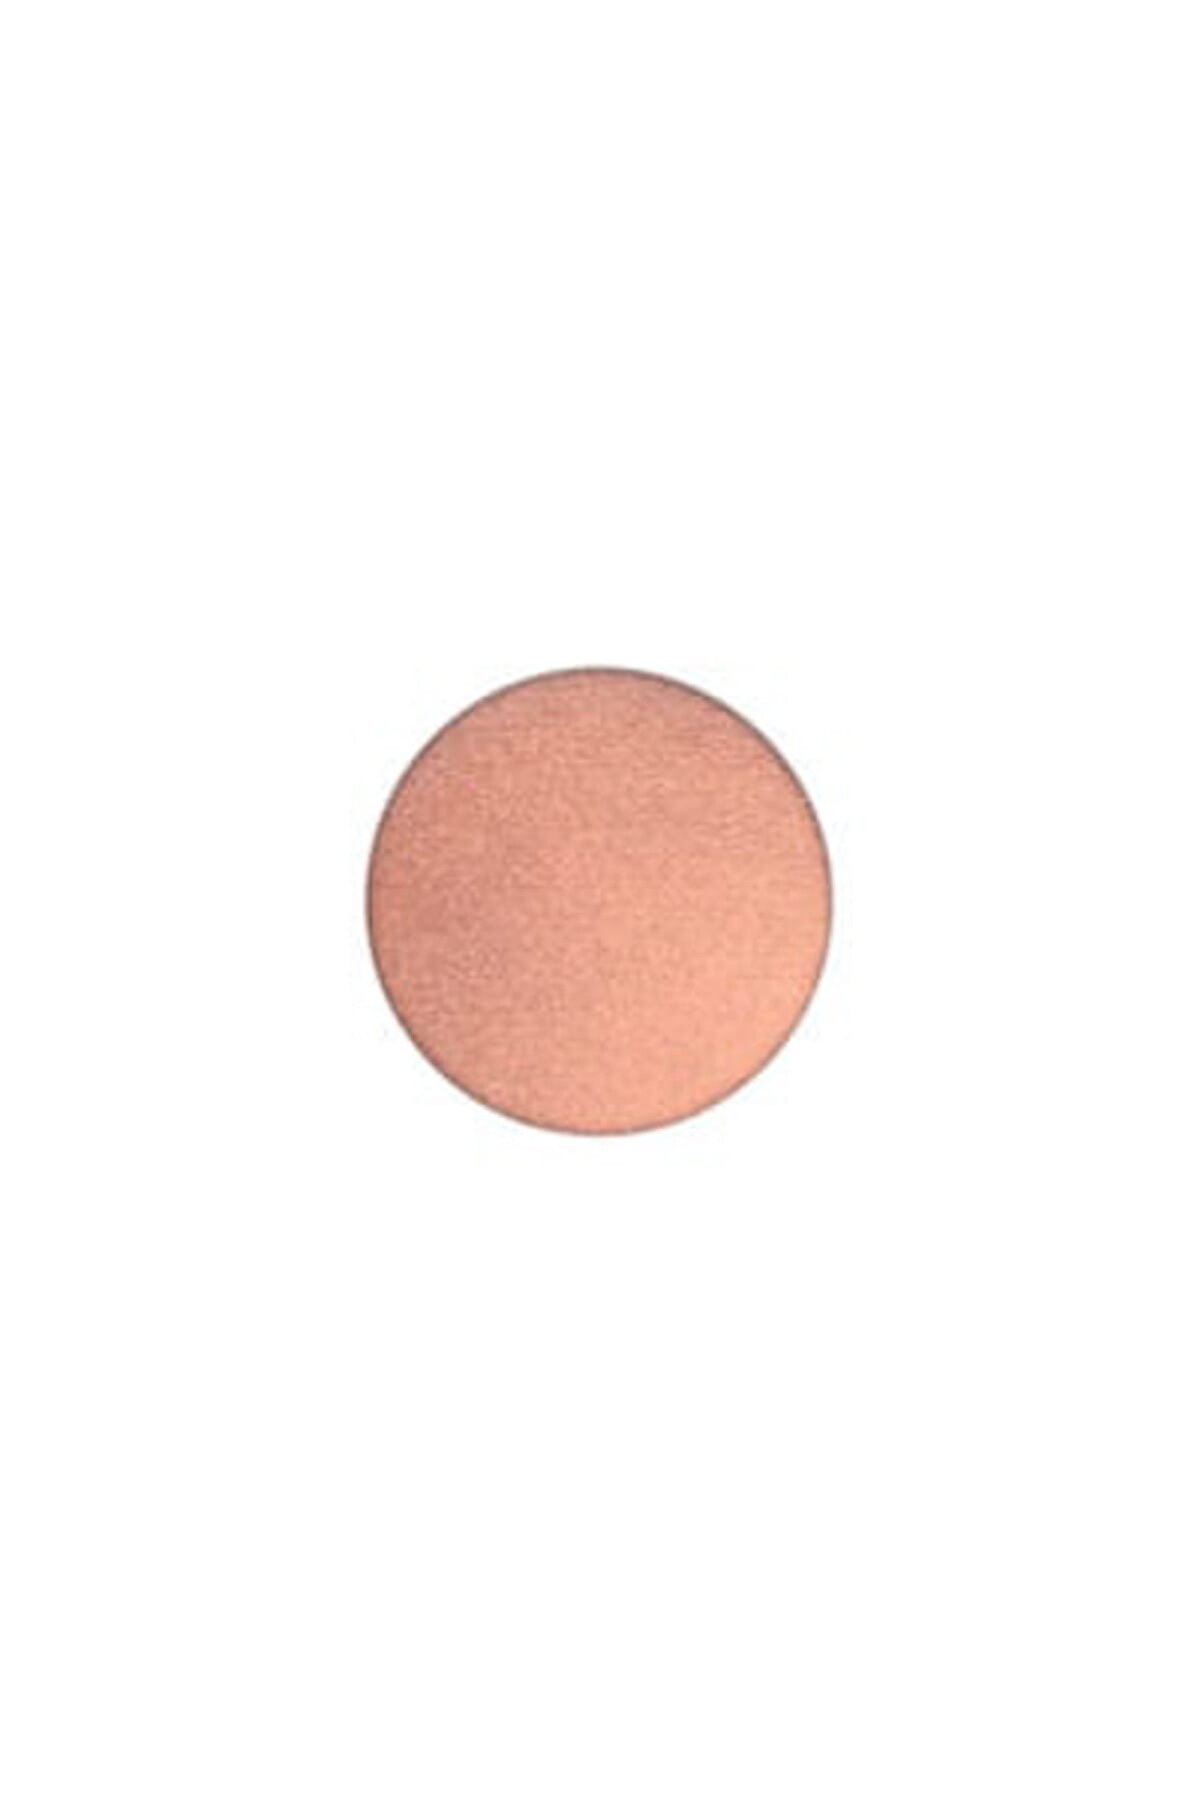 Mac Göz Farı - Refill Far Expensive Pink 1.3 g 773602077717